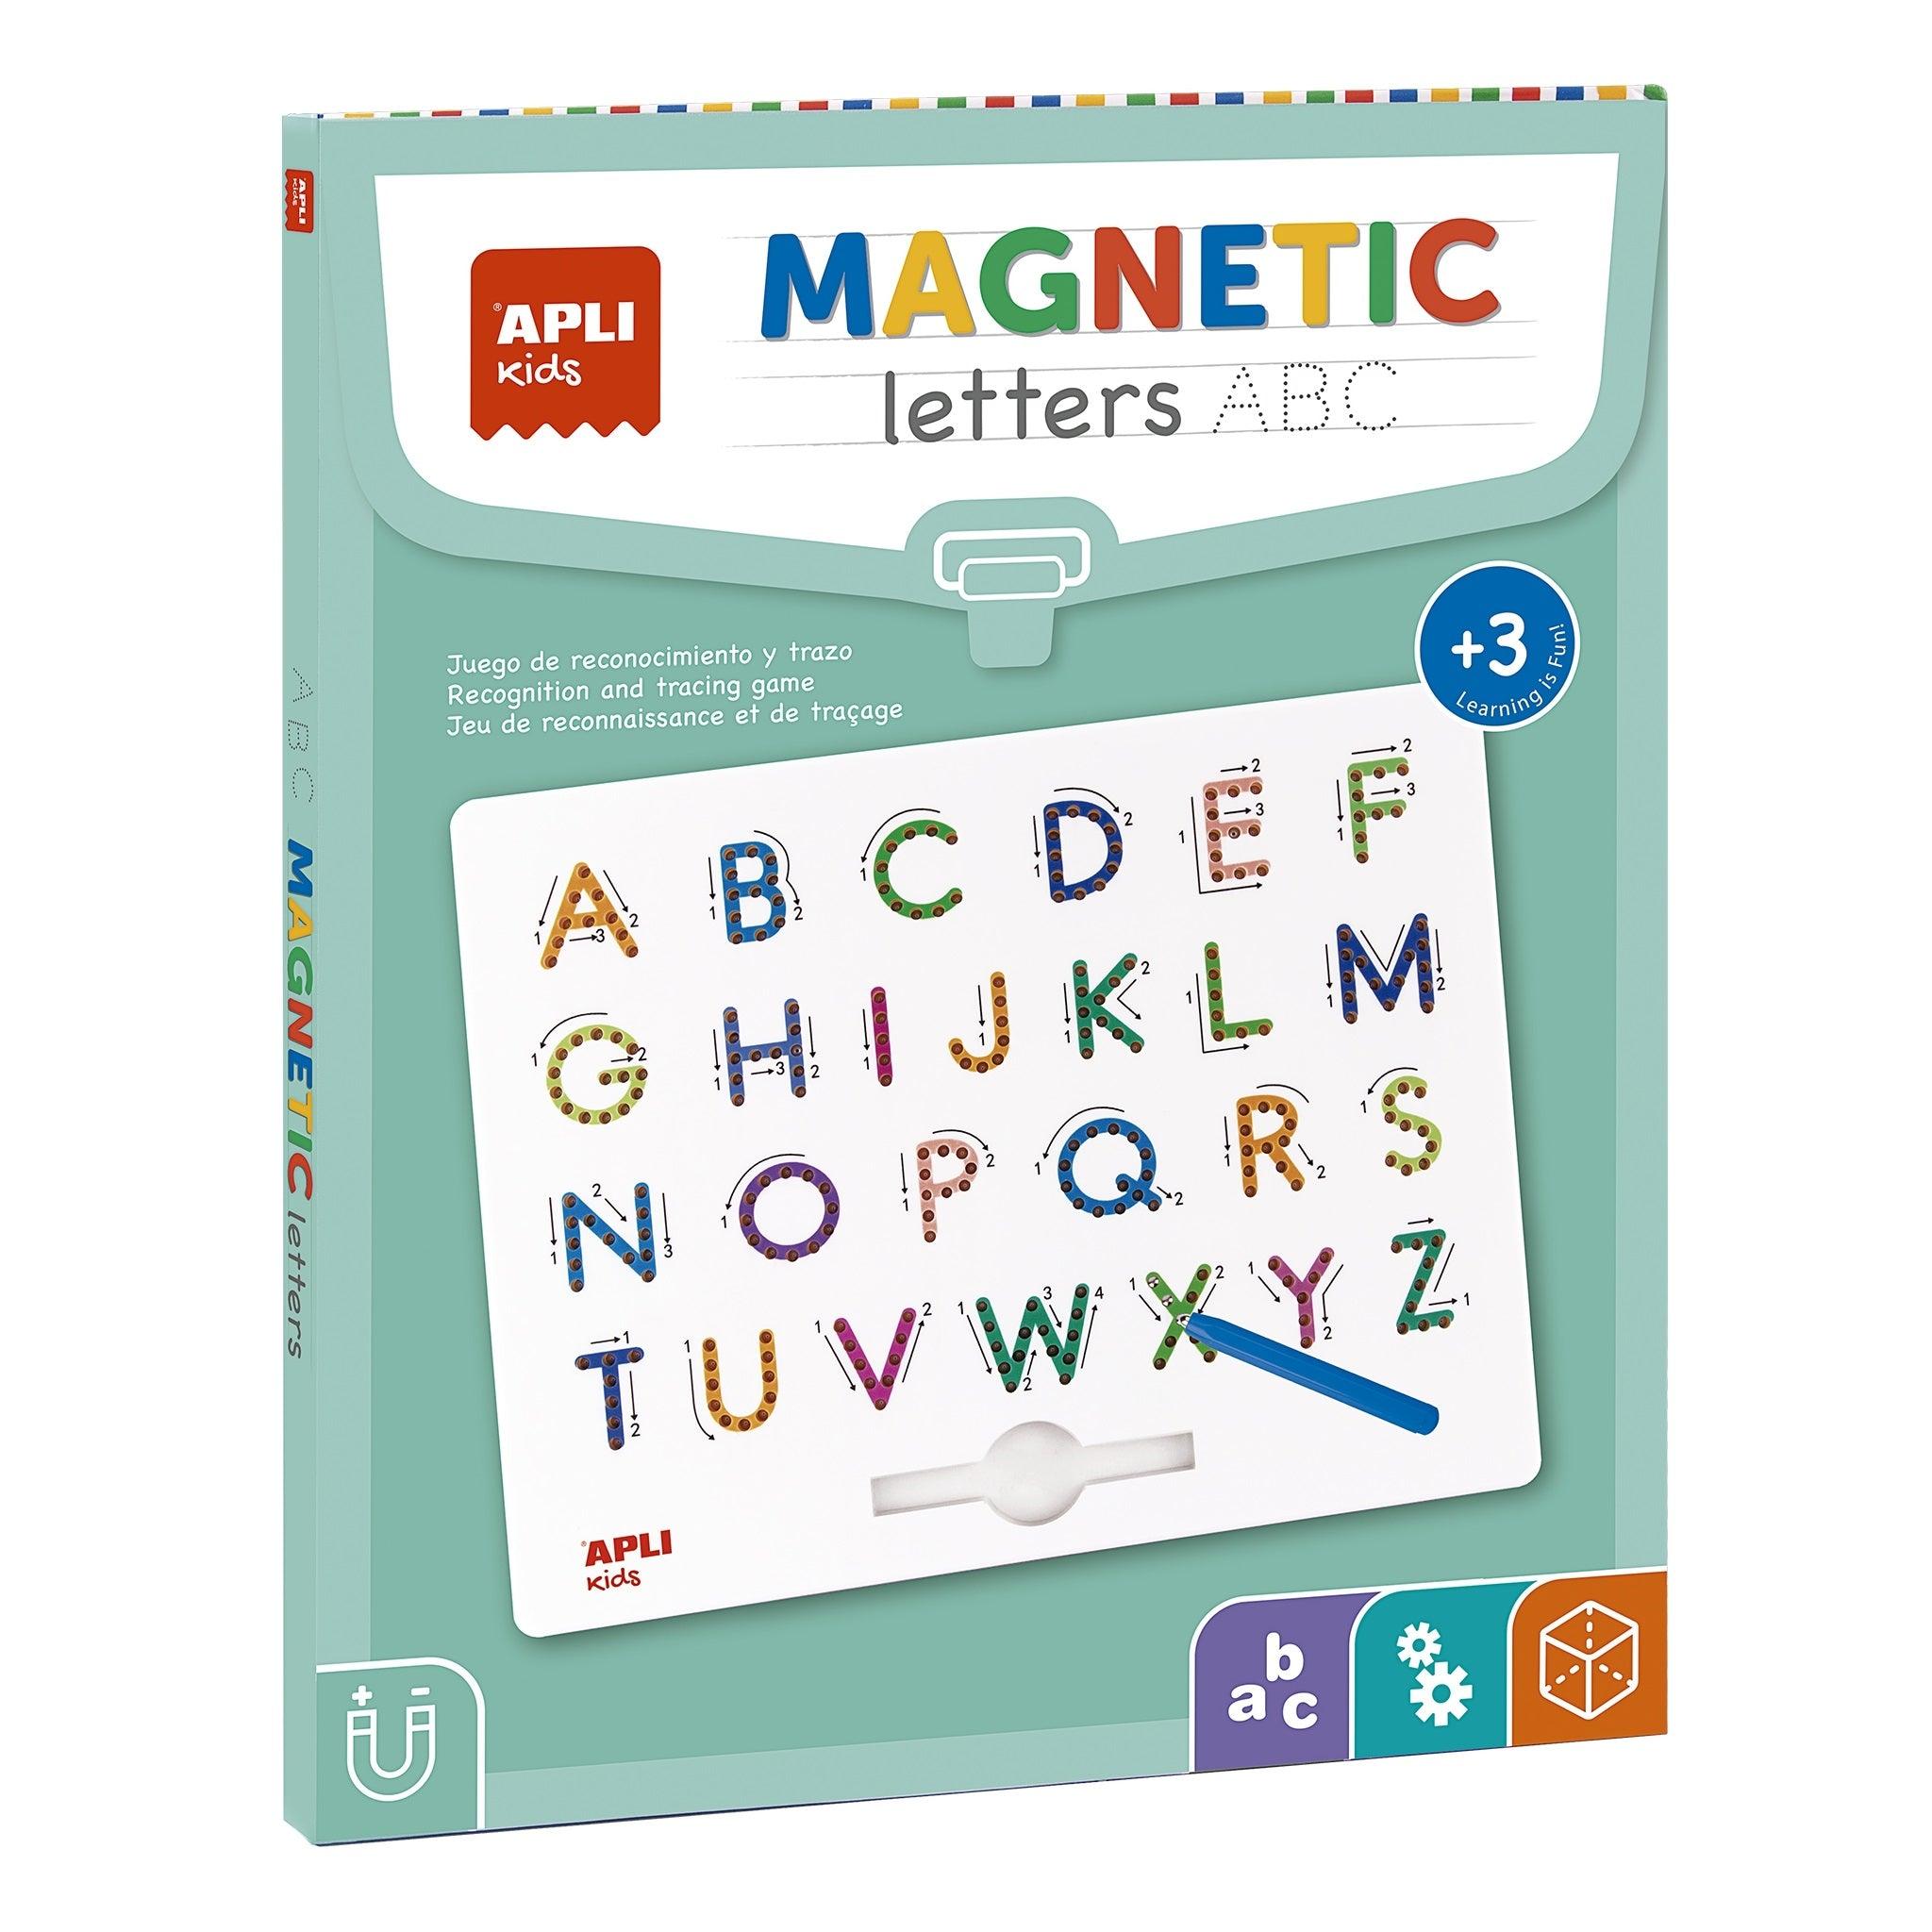 Apli Kids: magnettavle til tegning af magnetiske ABC-bogstaver